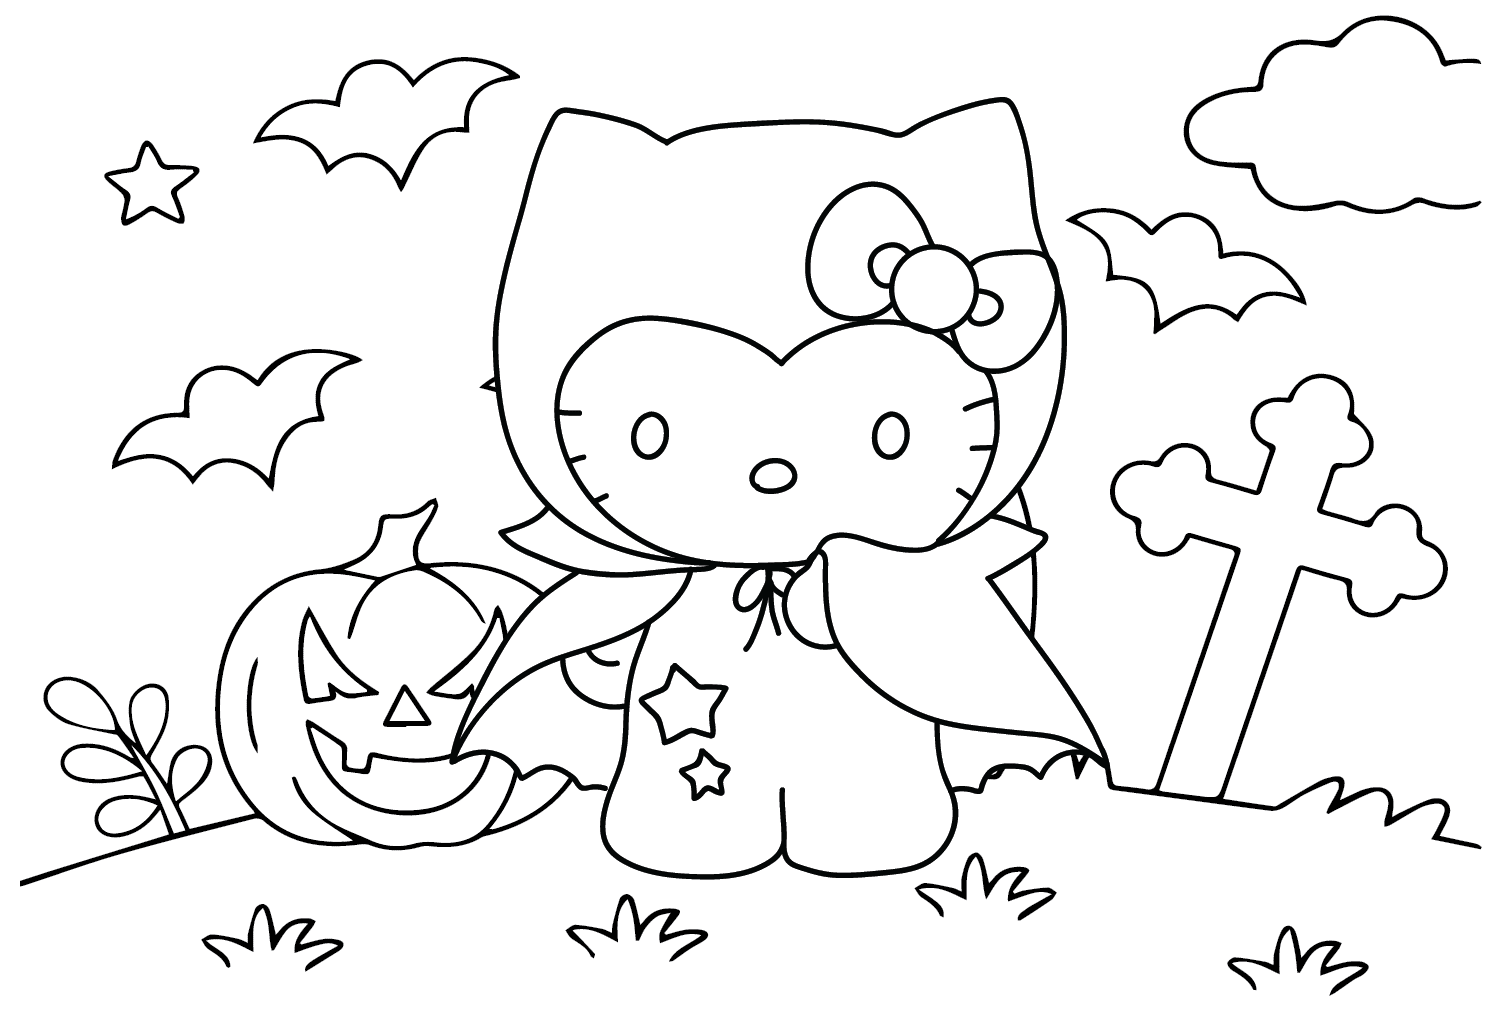 Бесплатная раскраска Hello Kitty на Хэллоуин от Хэллоуина Hello Kitty